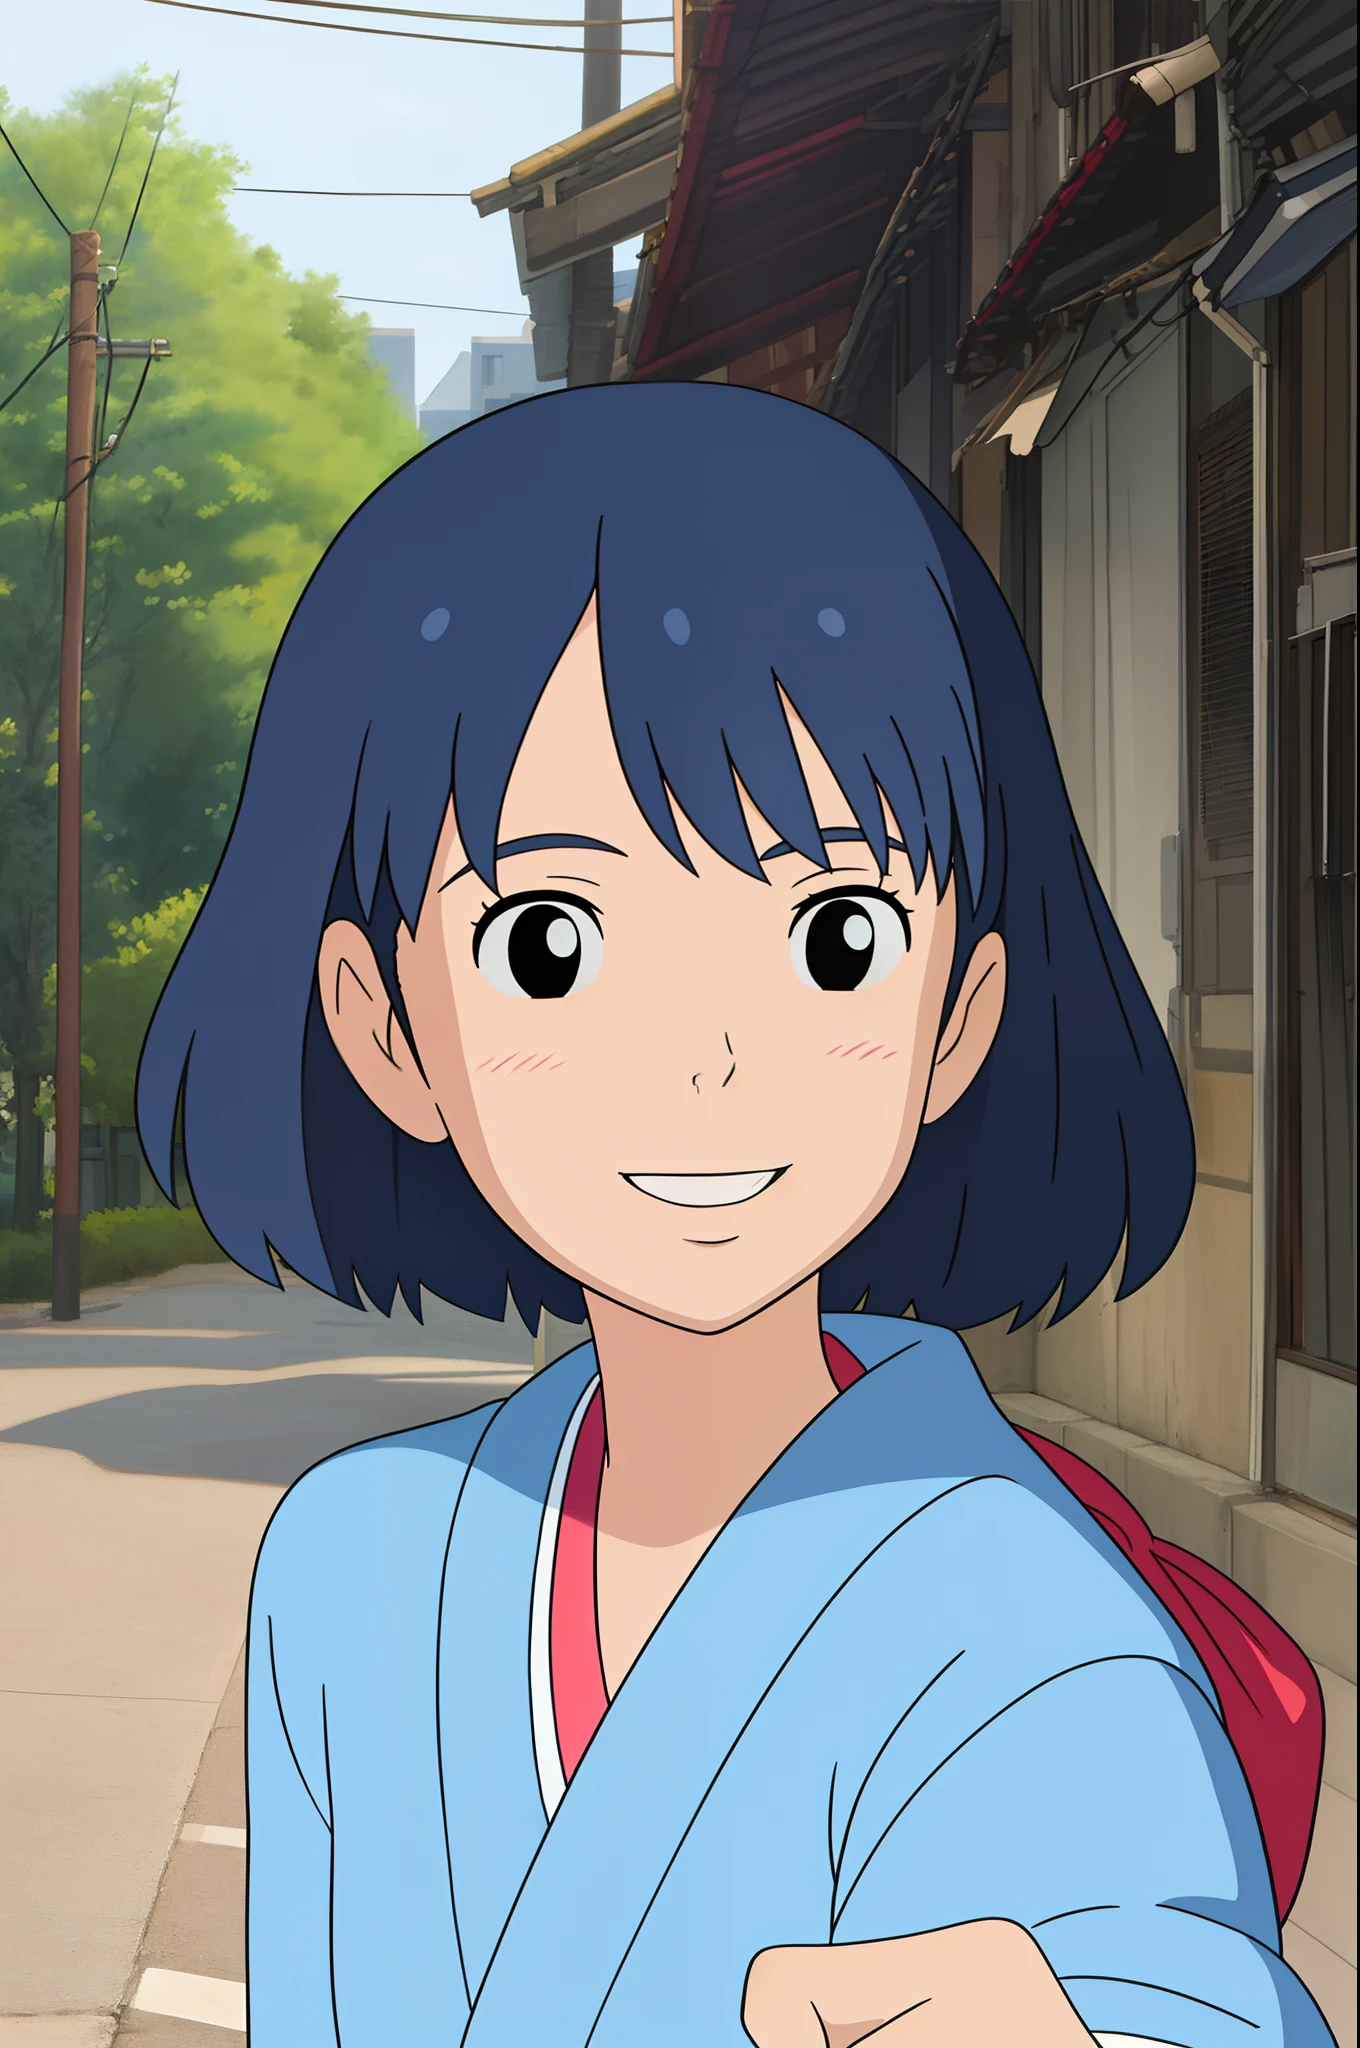 ((melhor qualidade)), ((Obra de arte)), (detalhado), 
1 garota,estilo japonês, casual, tronco, Sorriso, saudações, rubor, rua
 Hayao Miyazaki